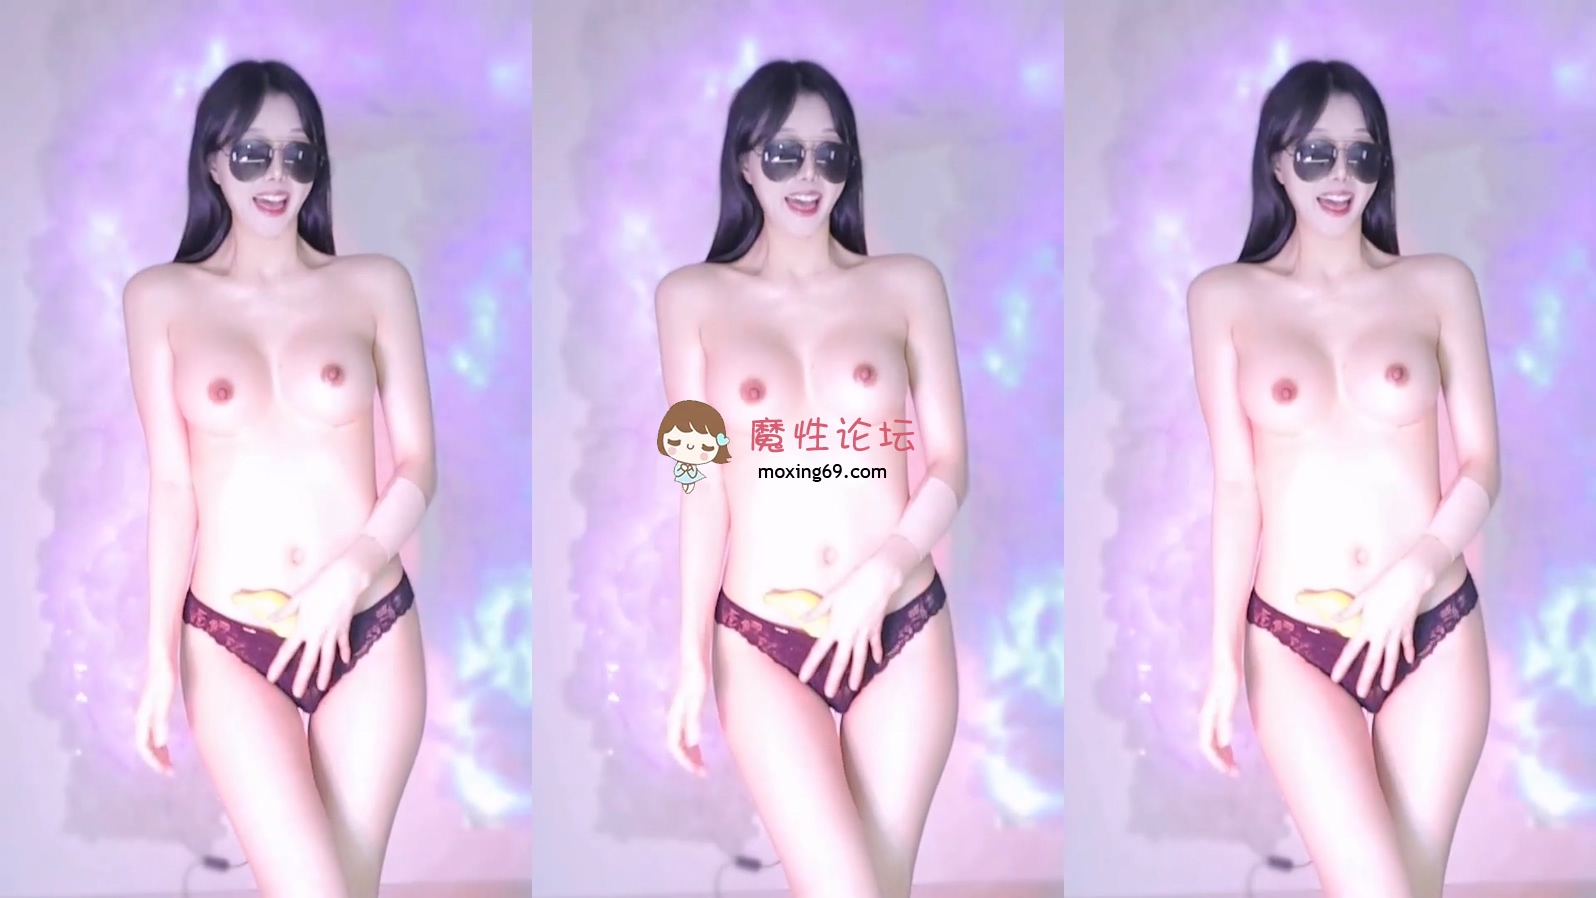 【无水印】韩国19+美女主播thgml1212 裸舞诱惑【10v 2.2g】【百度网盘】